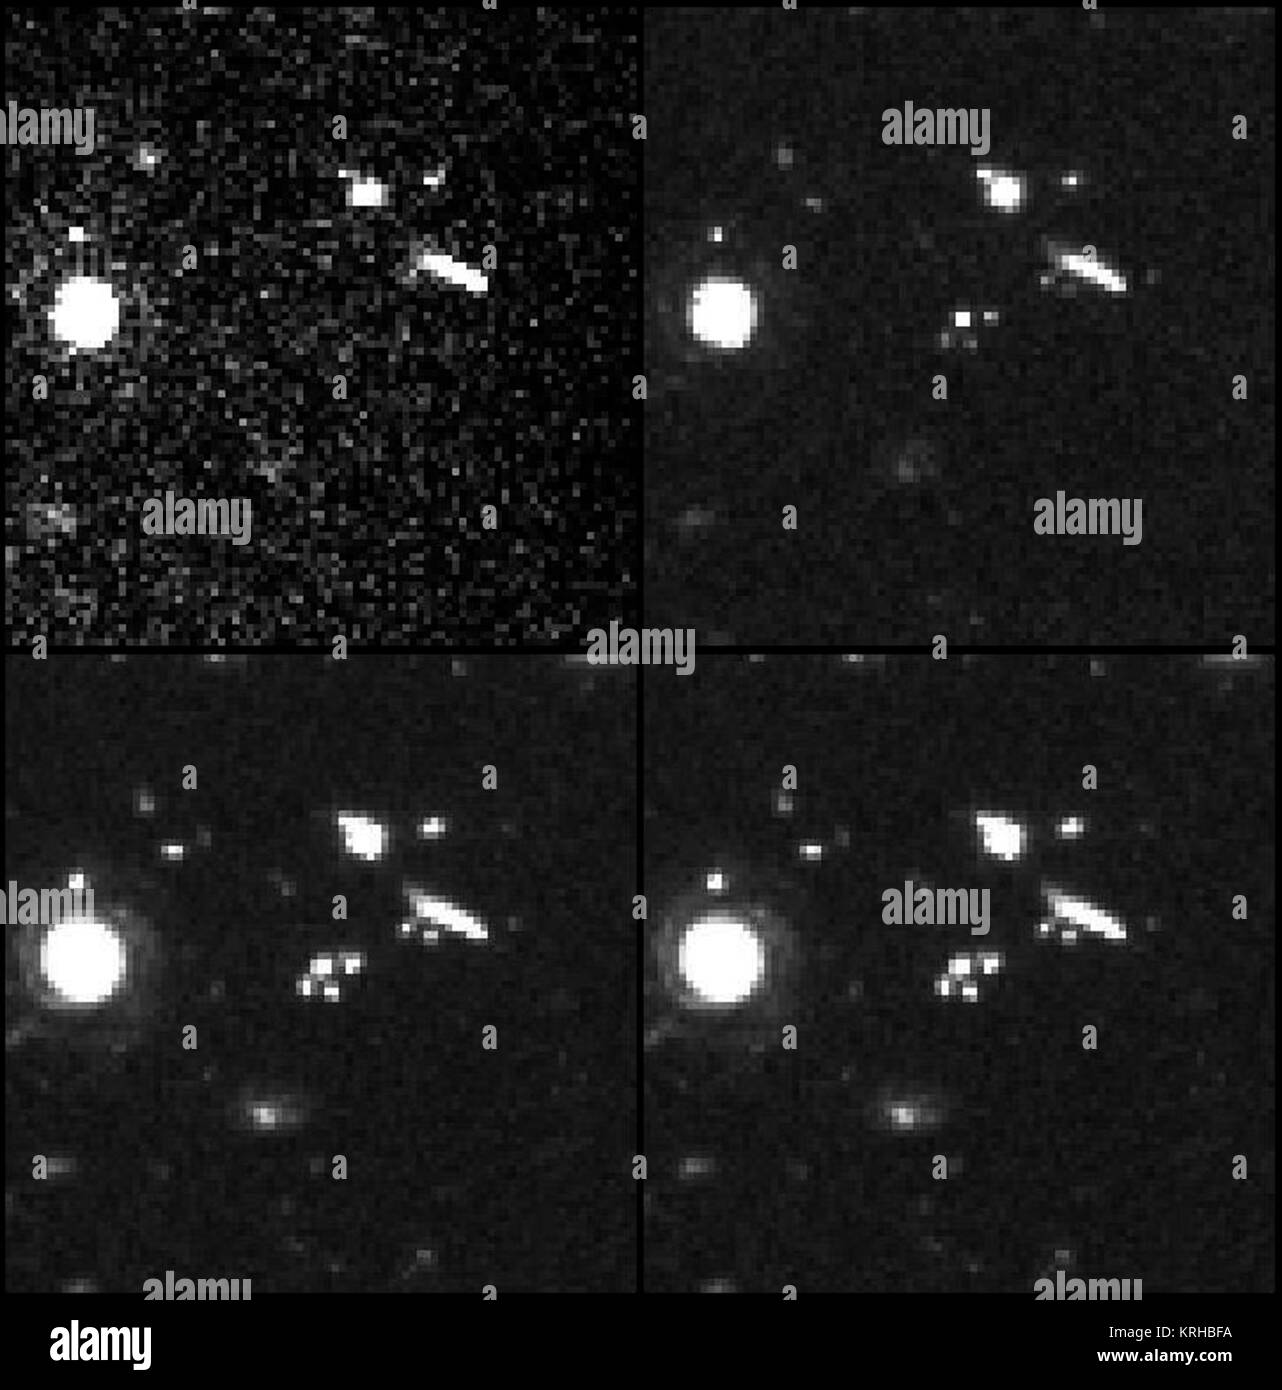 Galaxy in jeder der vier Wellenlängen aus der HDF Stockfoto